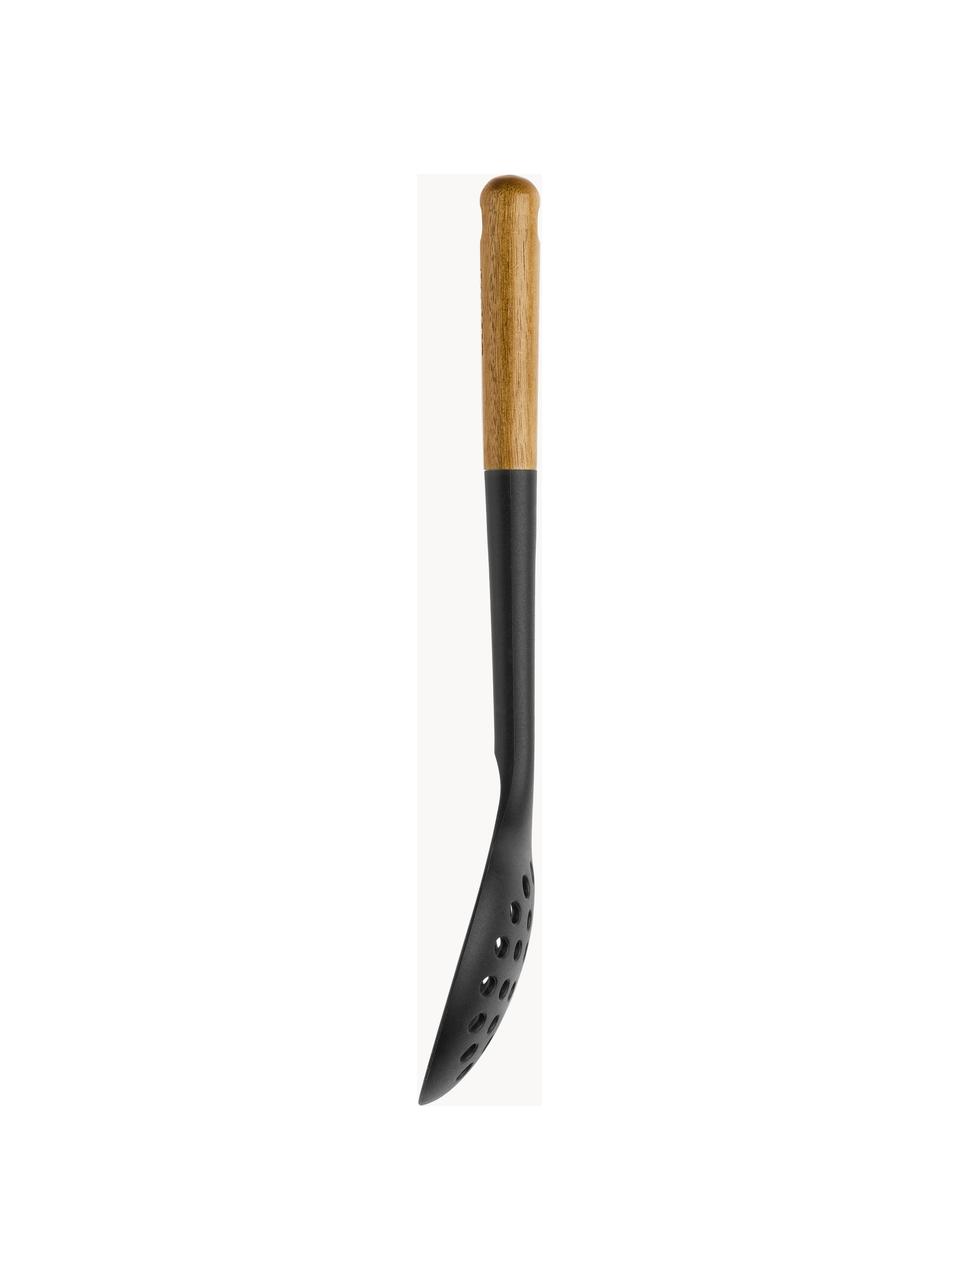 Schaumkelle Cook mit Akazienholz-Griff, Silikon, Akazienholz, Schwarz, Helles Holz, L 31 cm